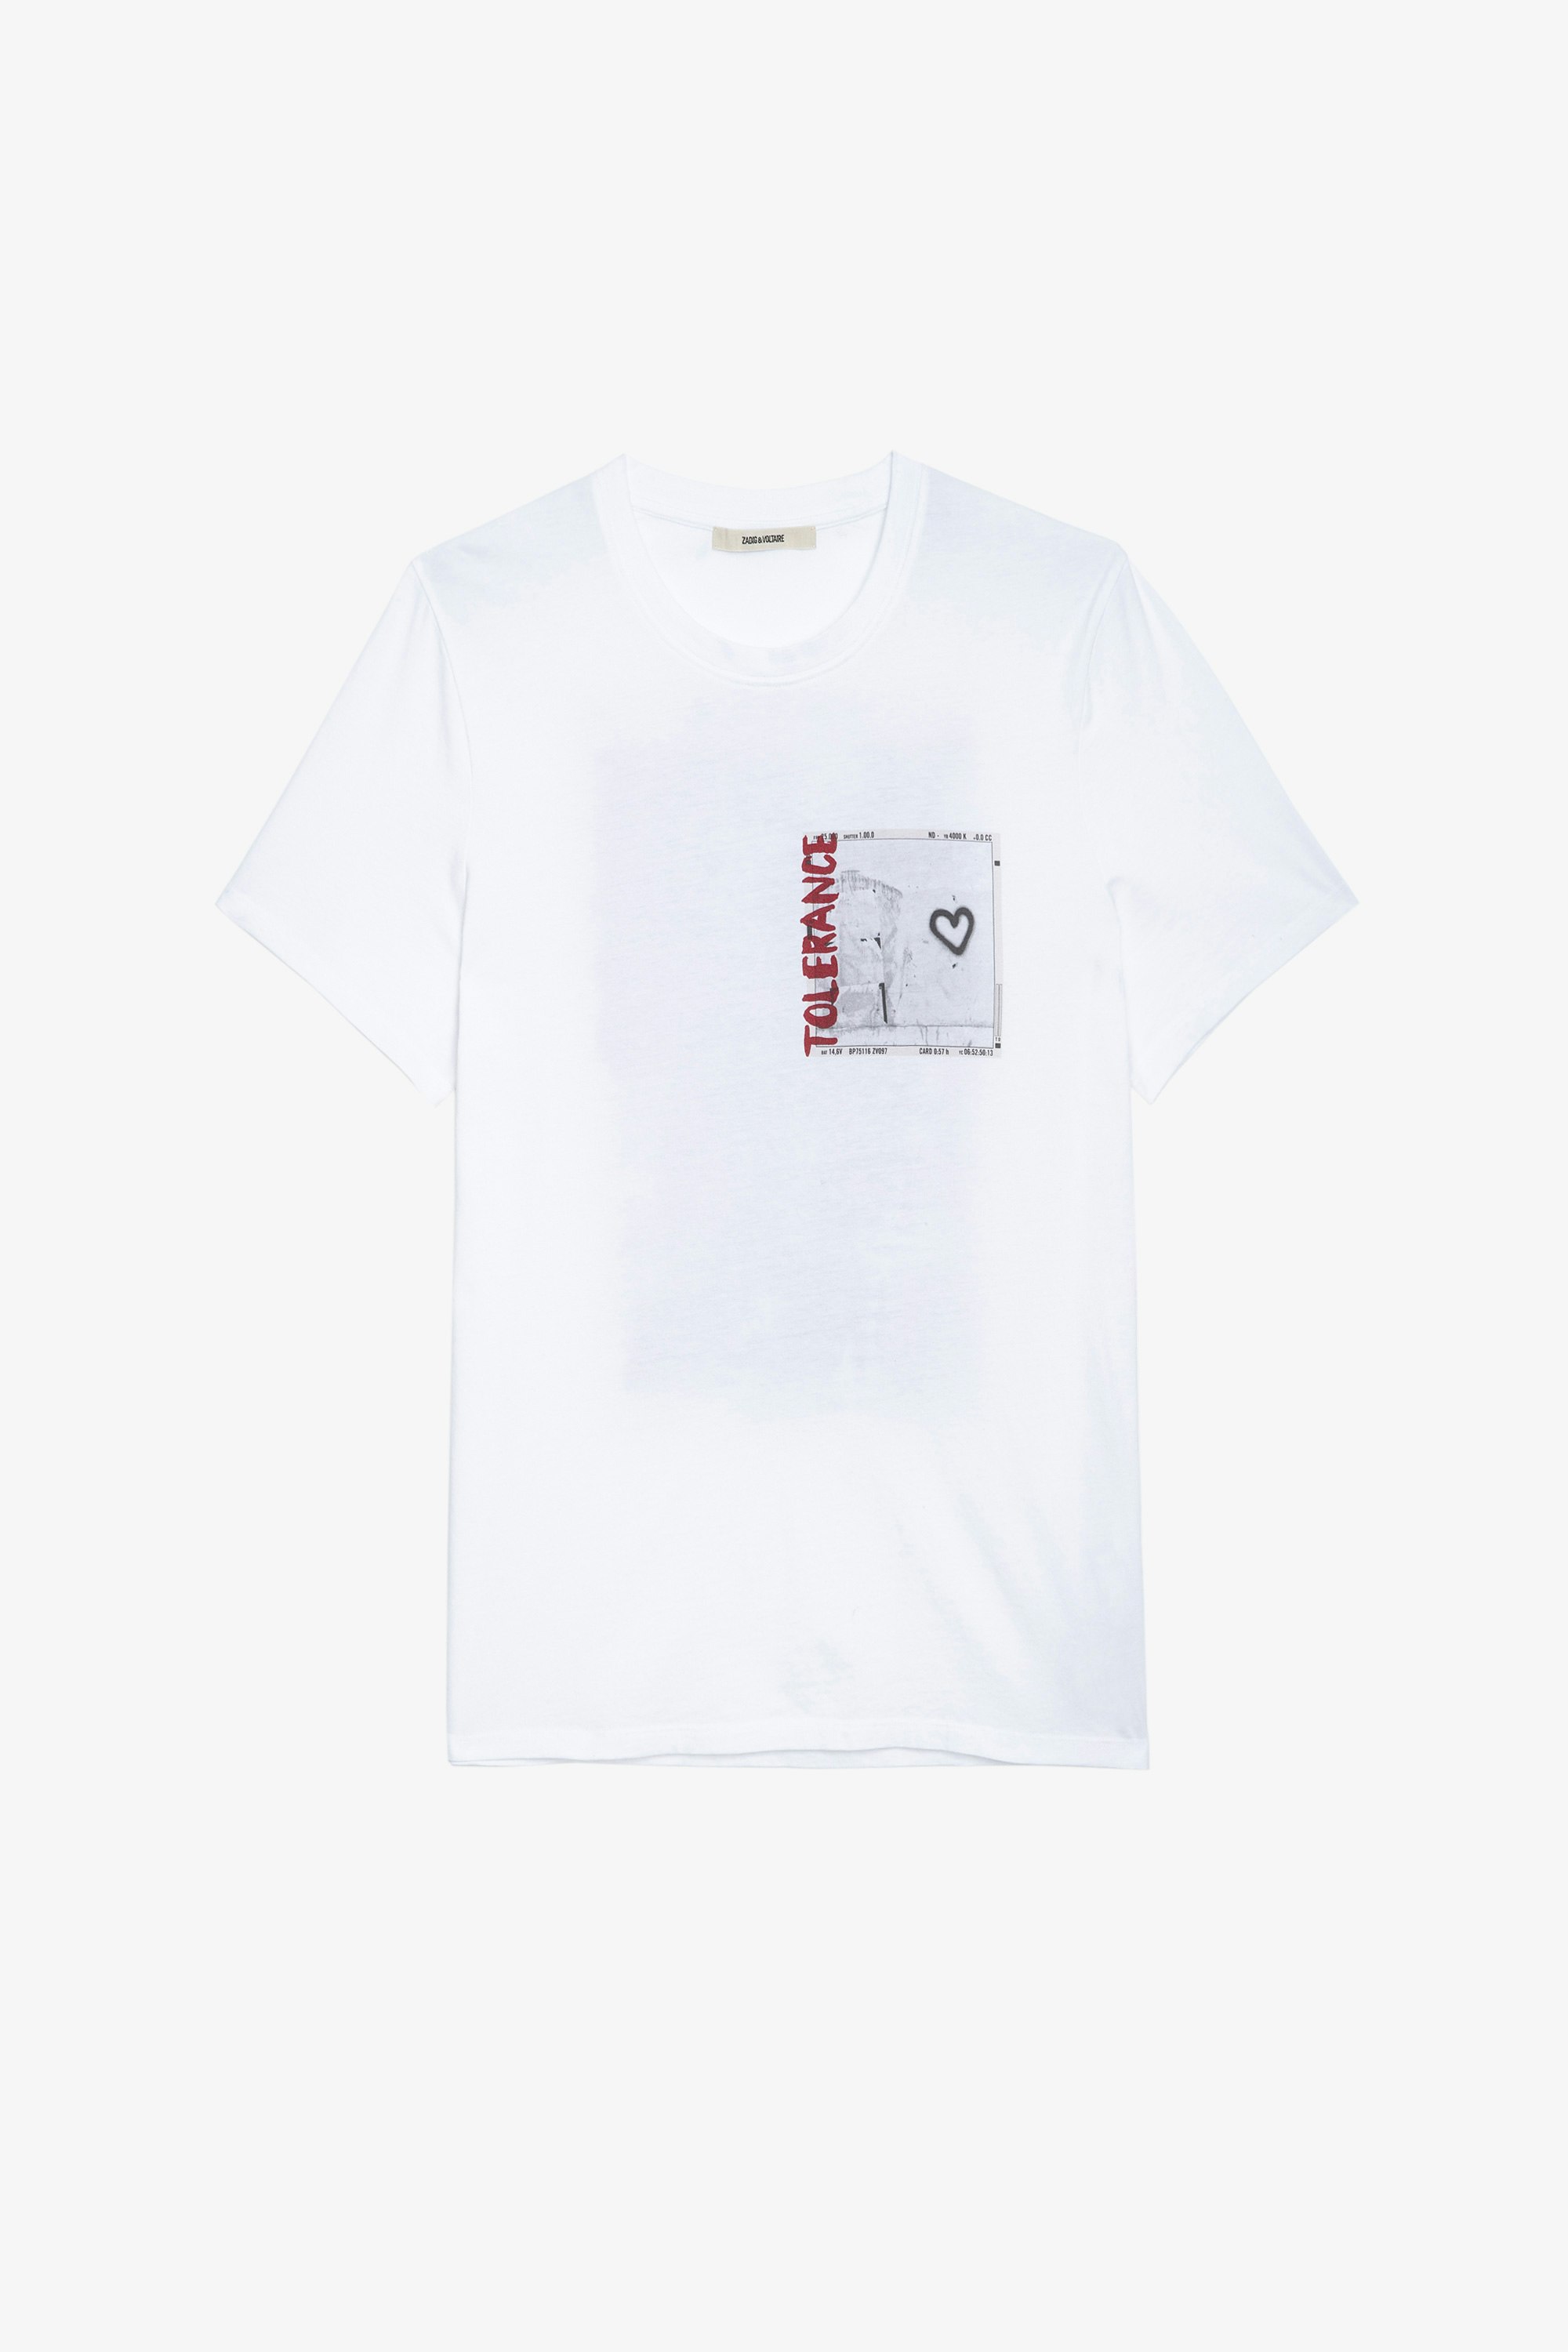 T-Shirt Ted Photoprint Herren-T-Shirt aus weißer Baumwolle mit Fotoprint